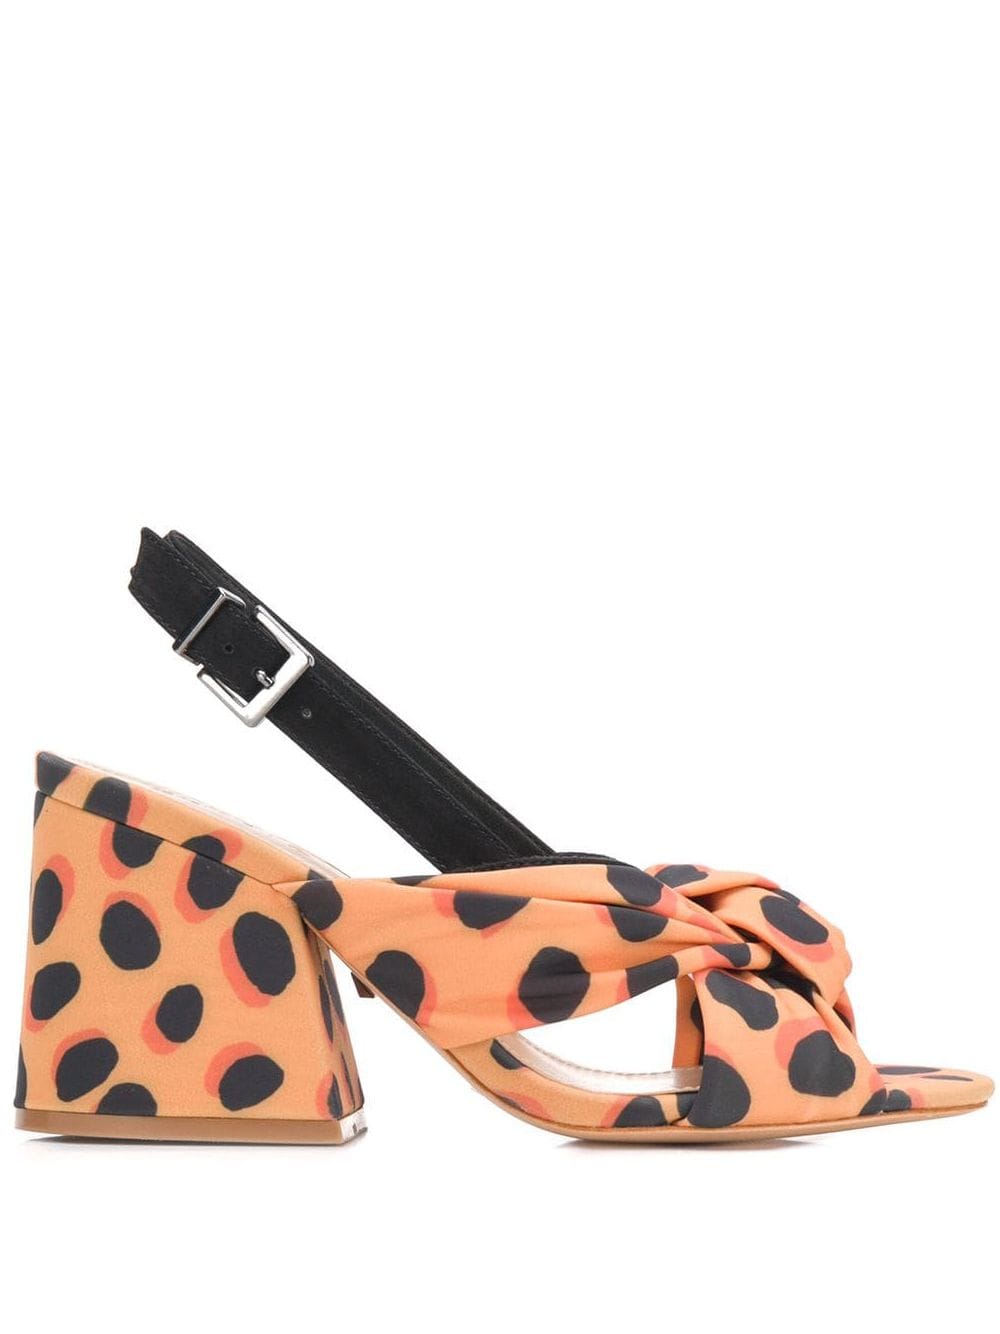 фото Schutz босоножки с леопардовым принтом на наборном каблуке